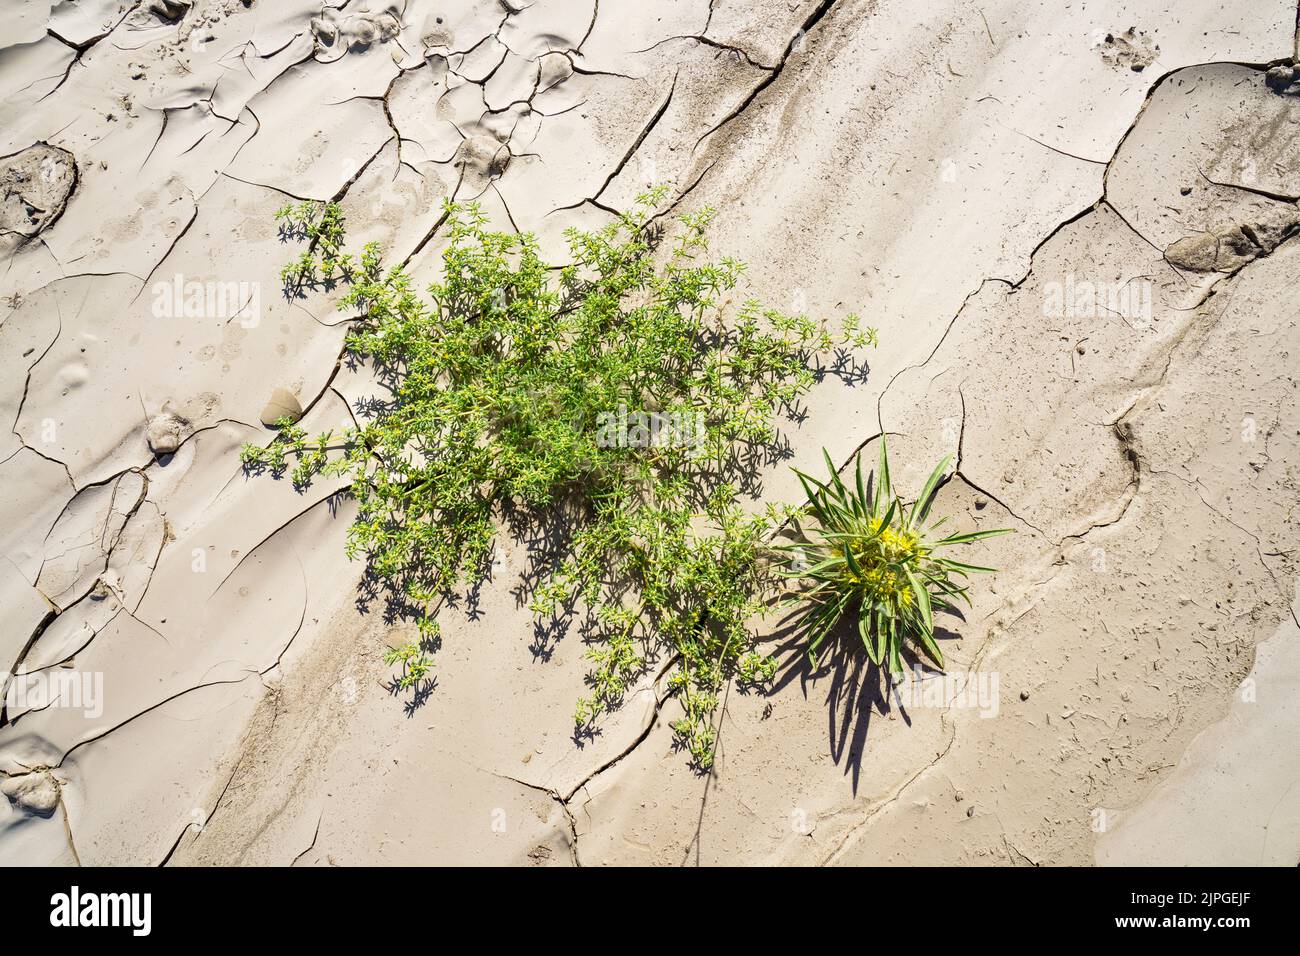 Foto simbolica, speranza, ambiente, fiori verdi si trova all'interno di motivi di letto di fiume secco. Fiume Swakop, Namibia, Africa Foto Stock